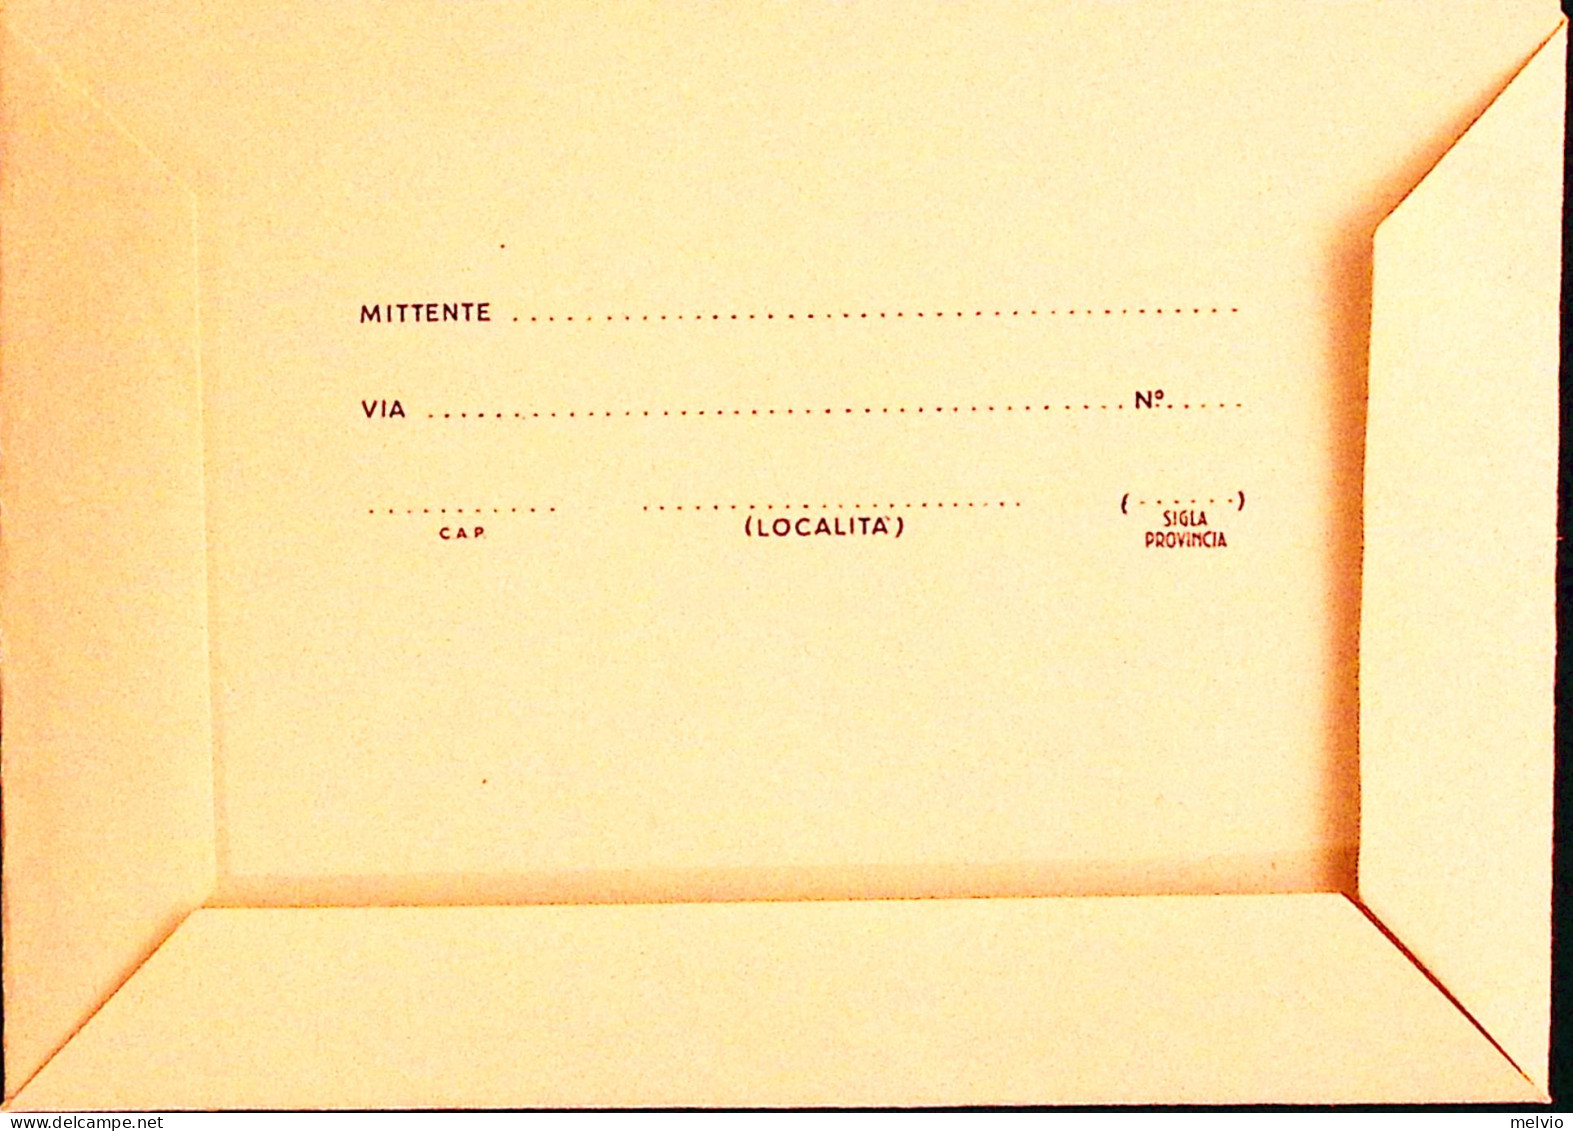 1977-VERONA 55 Festival Dell'Opera (14.7) Su Biglietto Postale Lire 120 Non Viag - 1971-80: Marcophilie